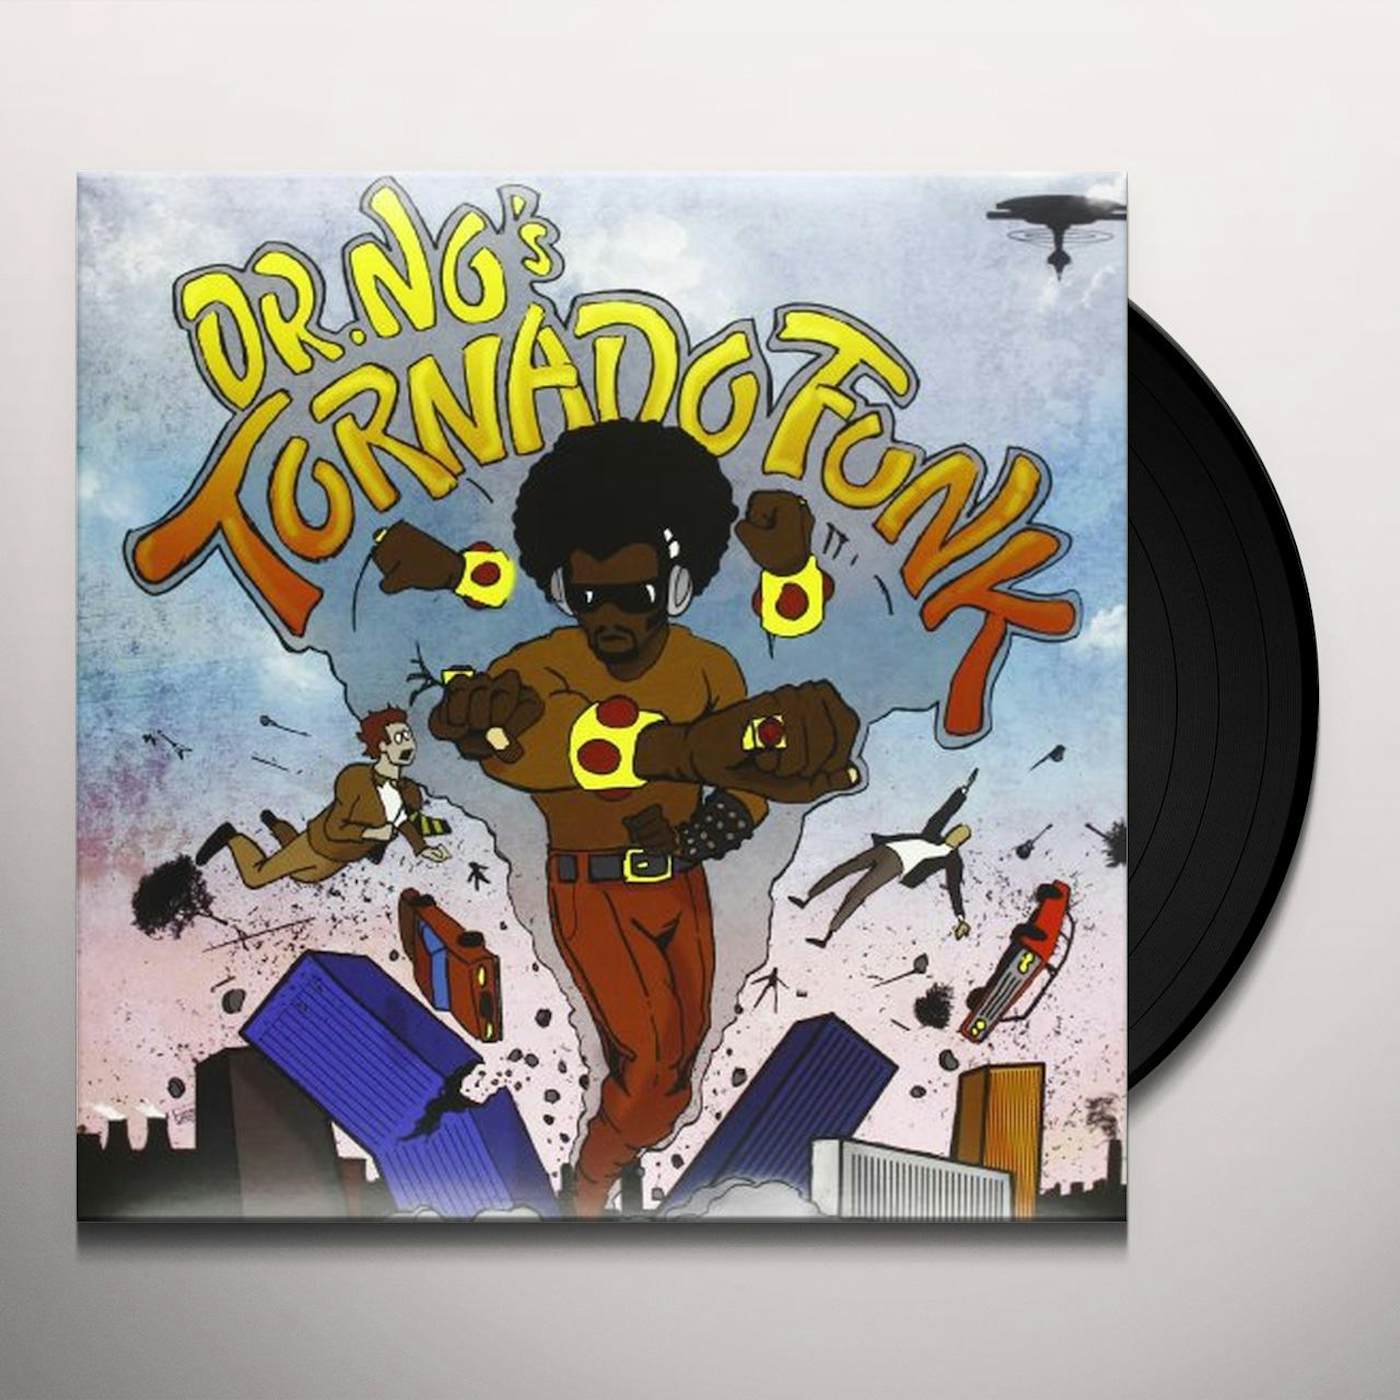 Oh No DR NO'S KALI TORNADO FUNK Vinyl Record